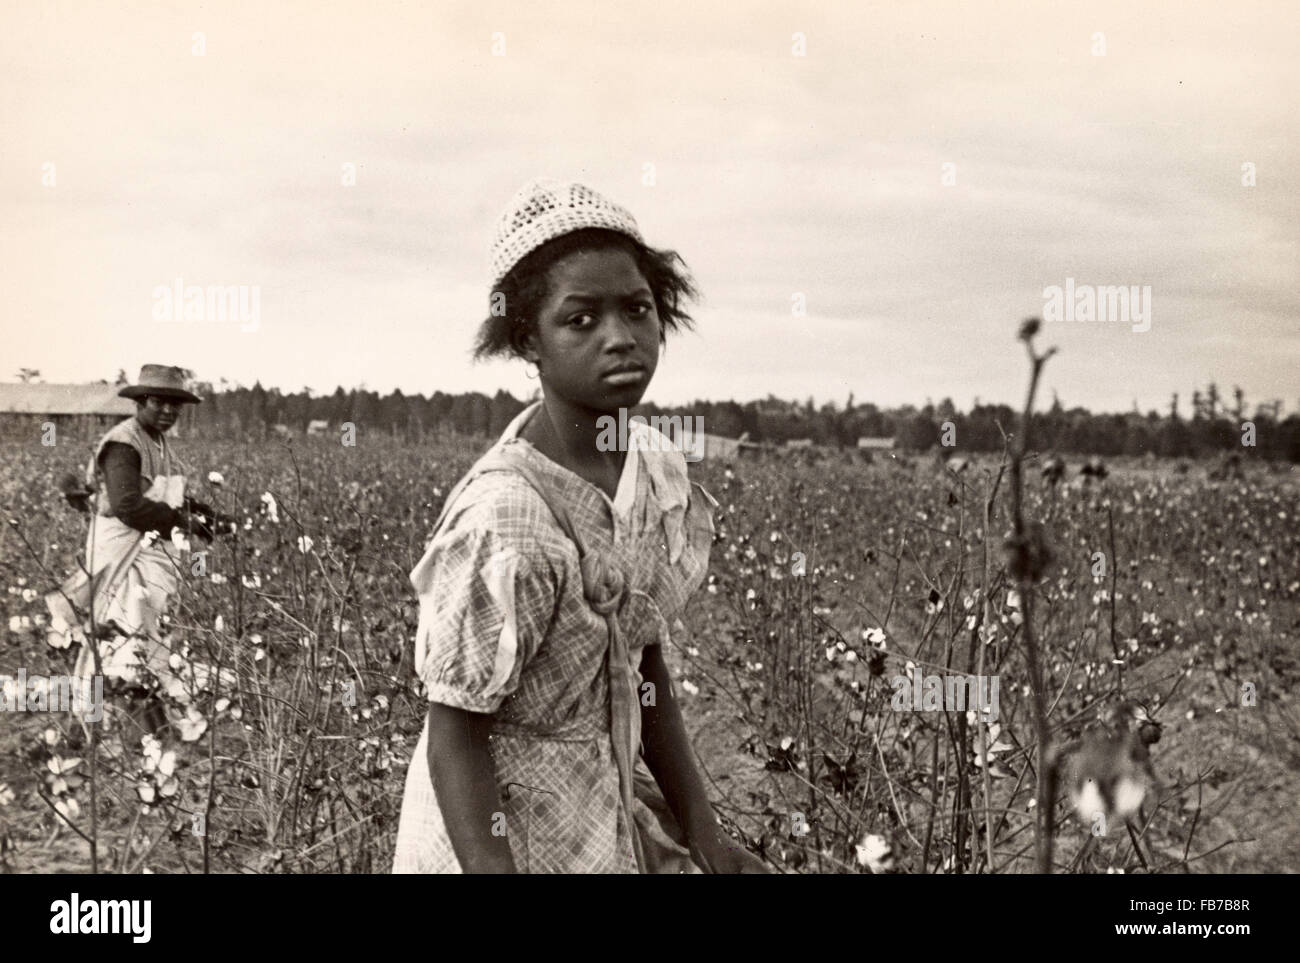 Cueilleurs de coton, coton picking, l'Amérique, 1930 Banque D'Images